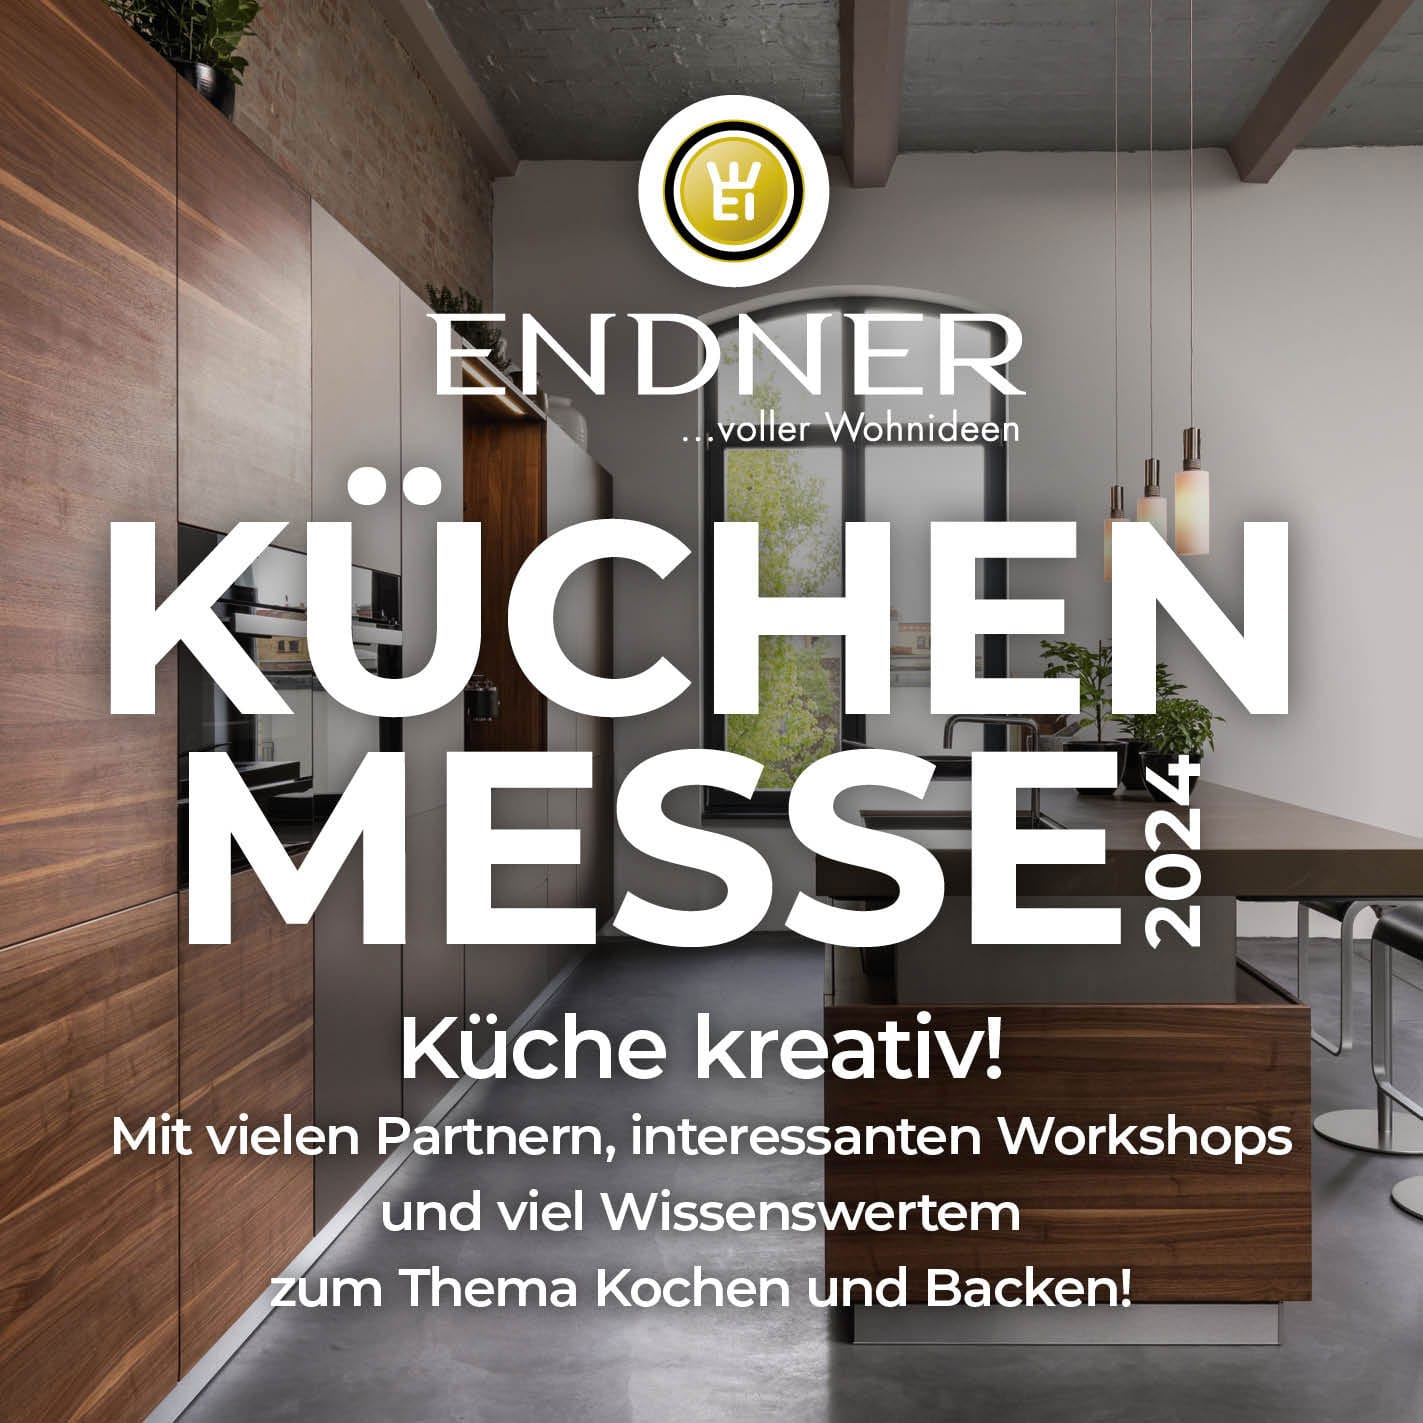 Endner Kuechenmesse Slide mobile 24 04 1